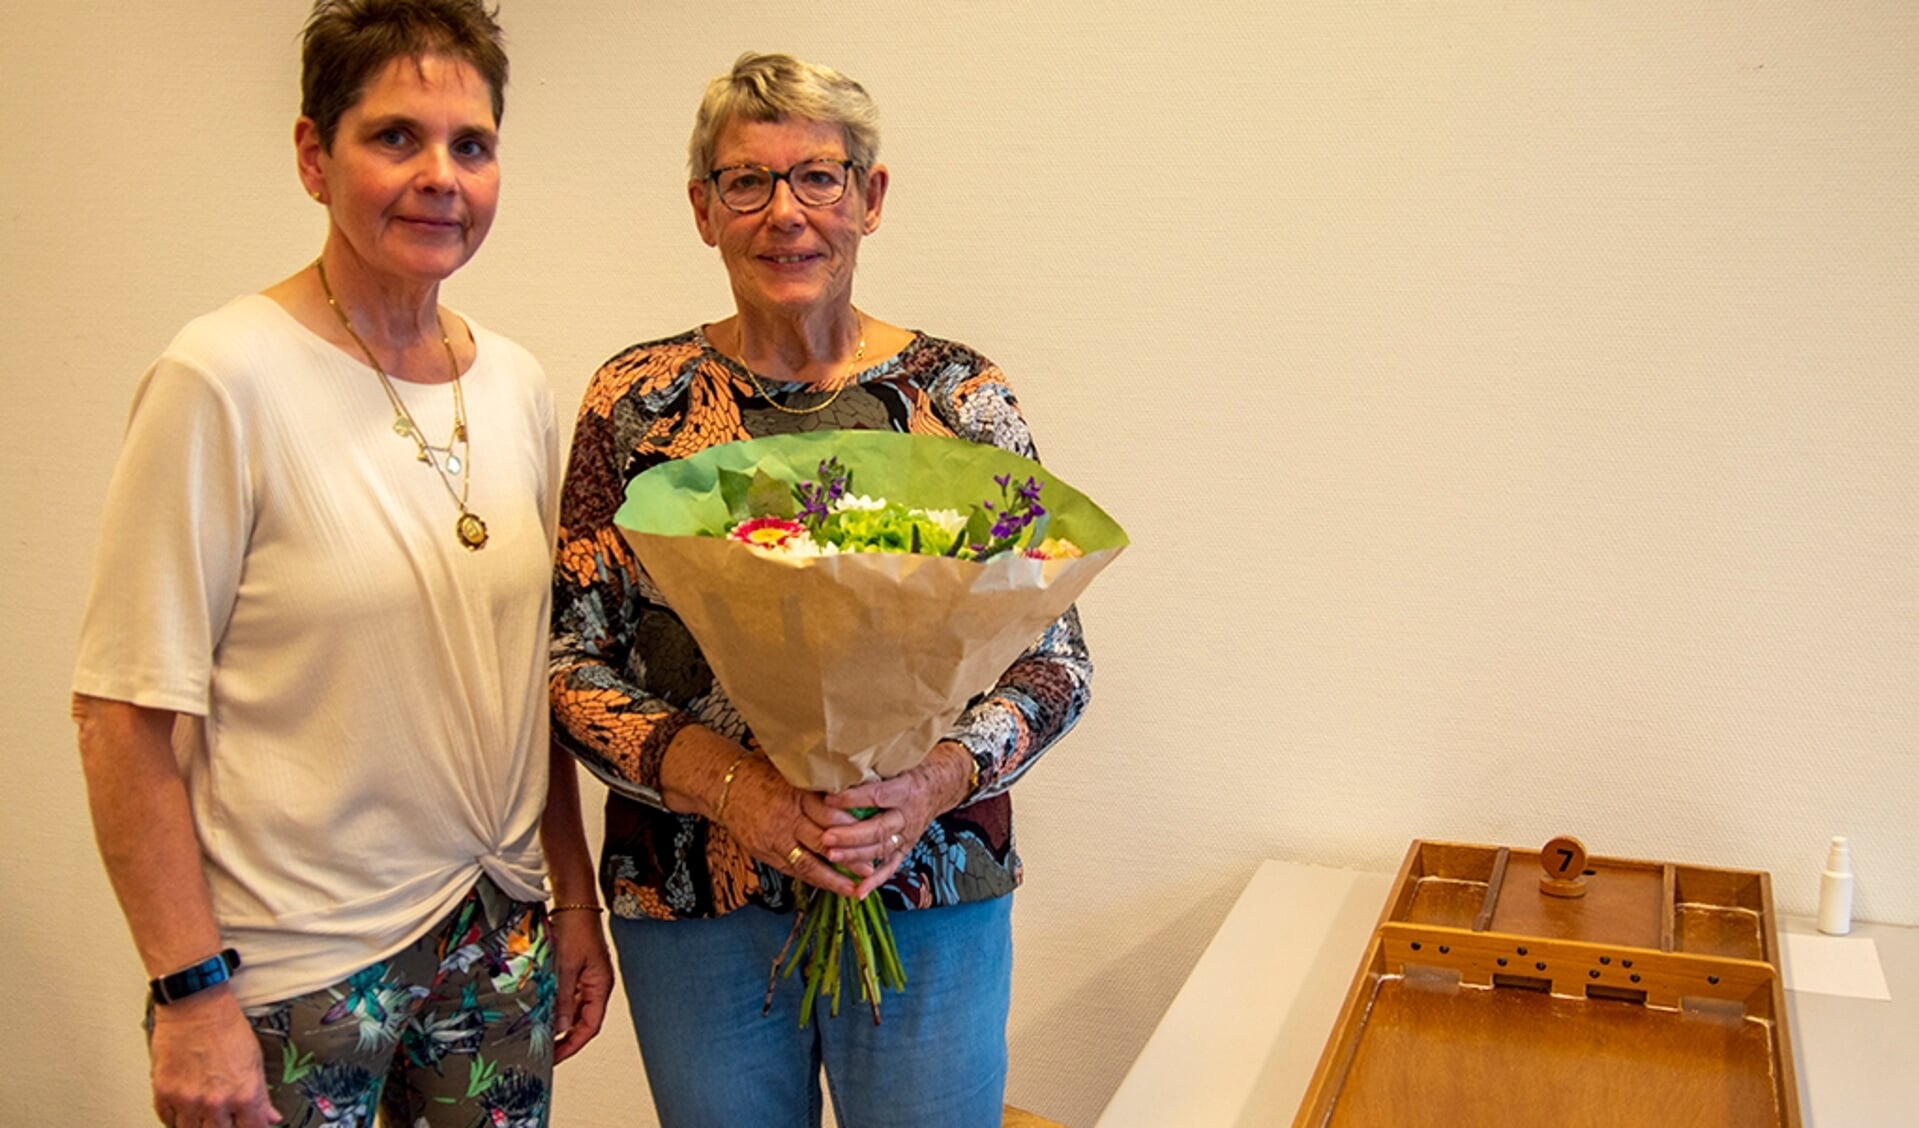 Voorzitter Ineke Draaijer geeft Jannie Tempelman (80jr) en Fenna Verbeek (92jr) een bos bloemen. Foto: Marion Verhaaf
